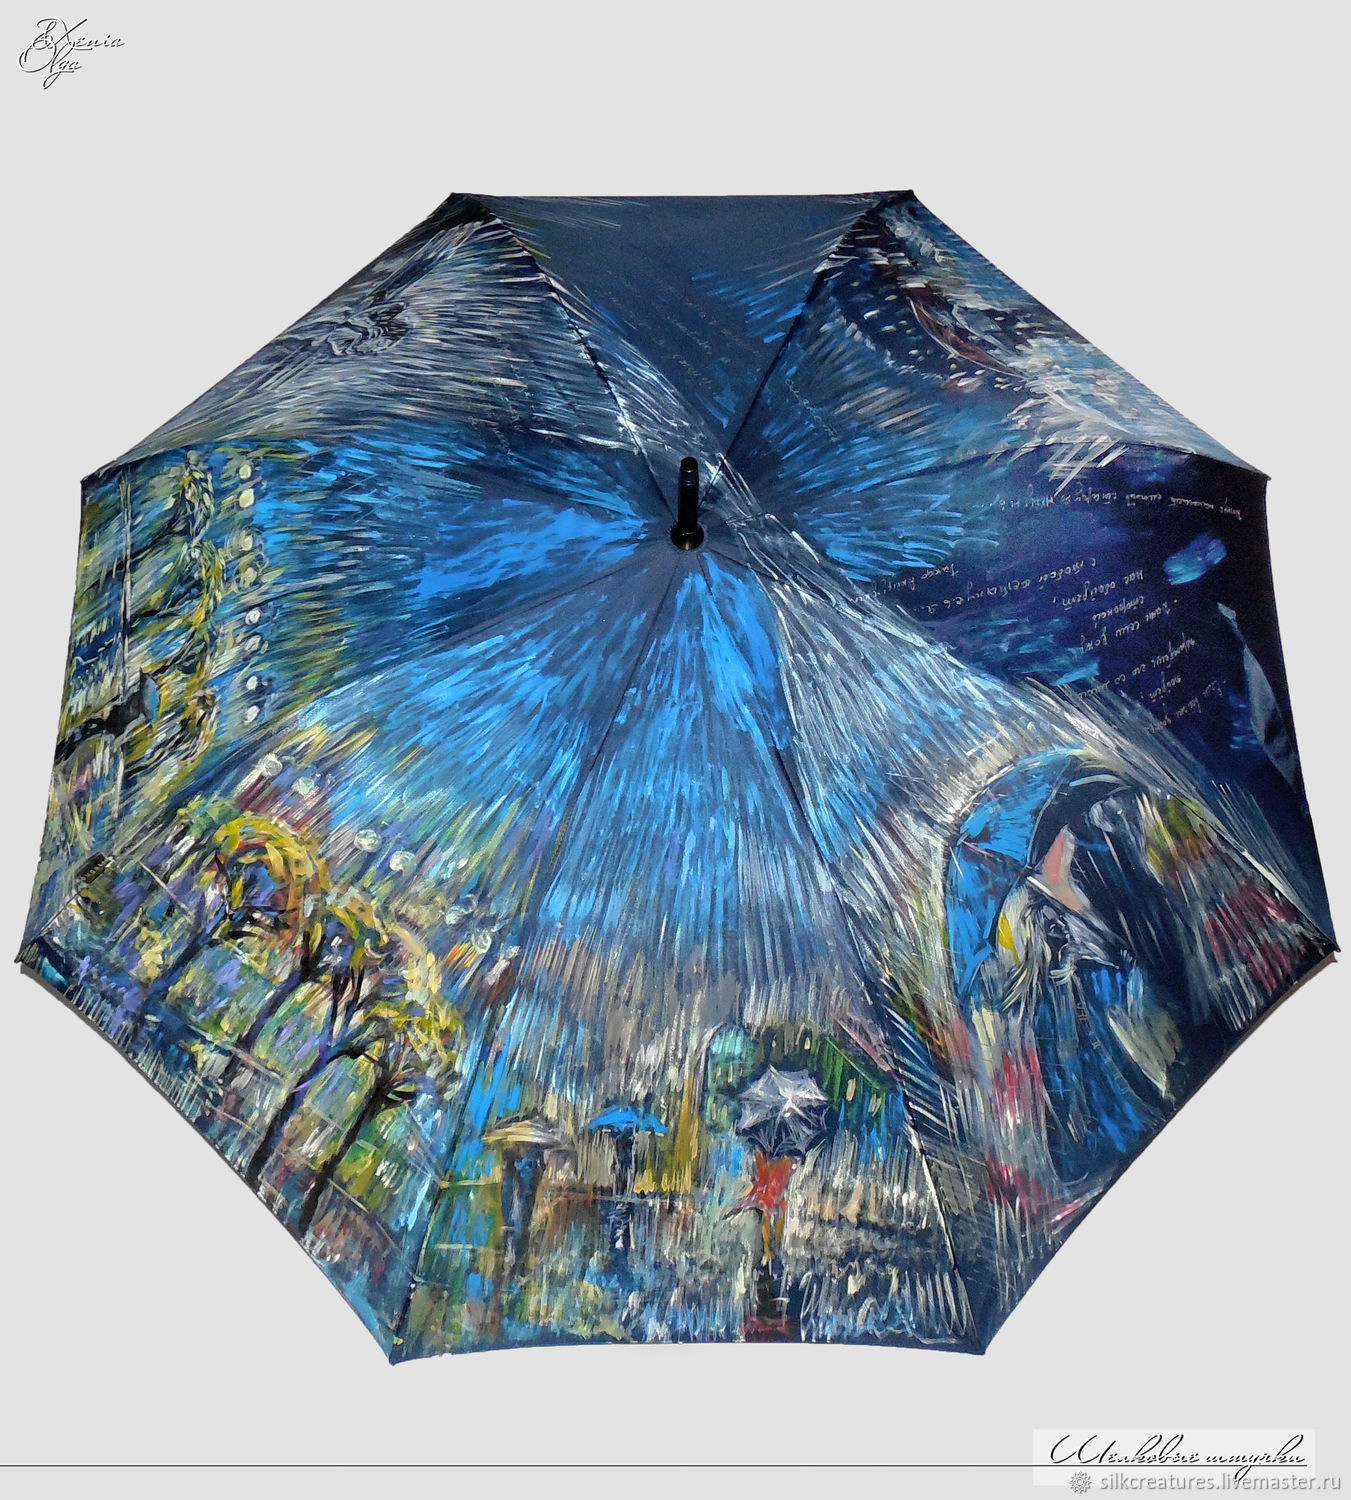 Купить зонт женский на озон. Женский зонт. Зонт расписной. Разрисованные зонты. Зонт с принтом.